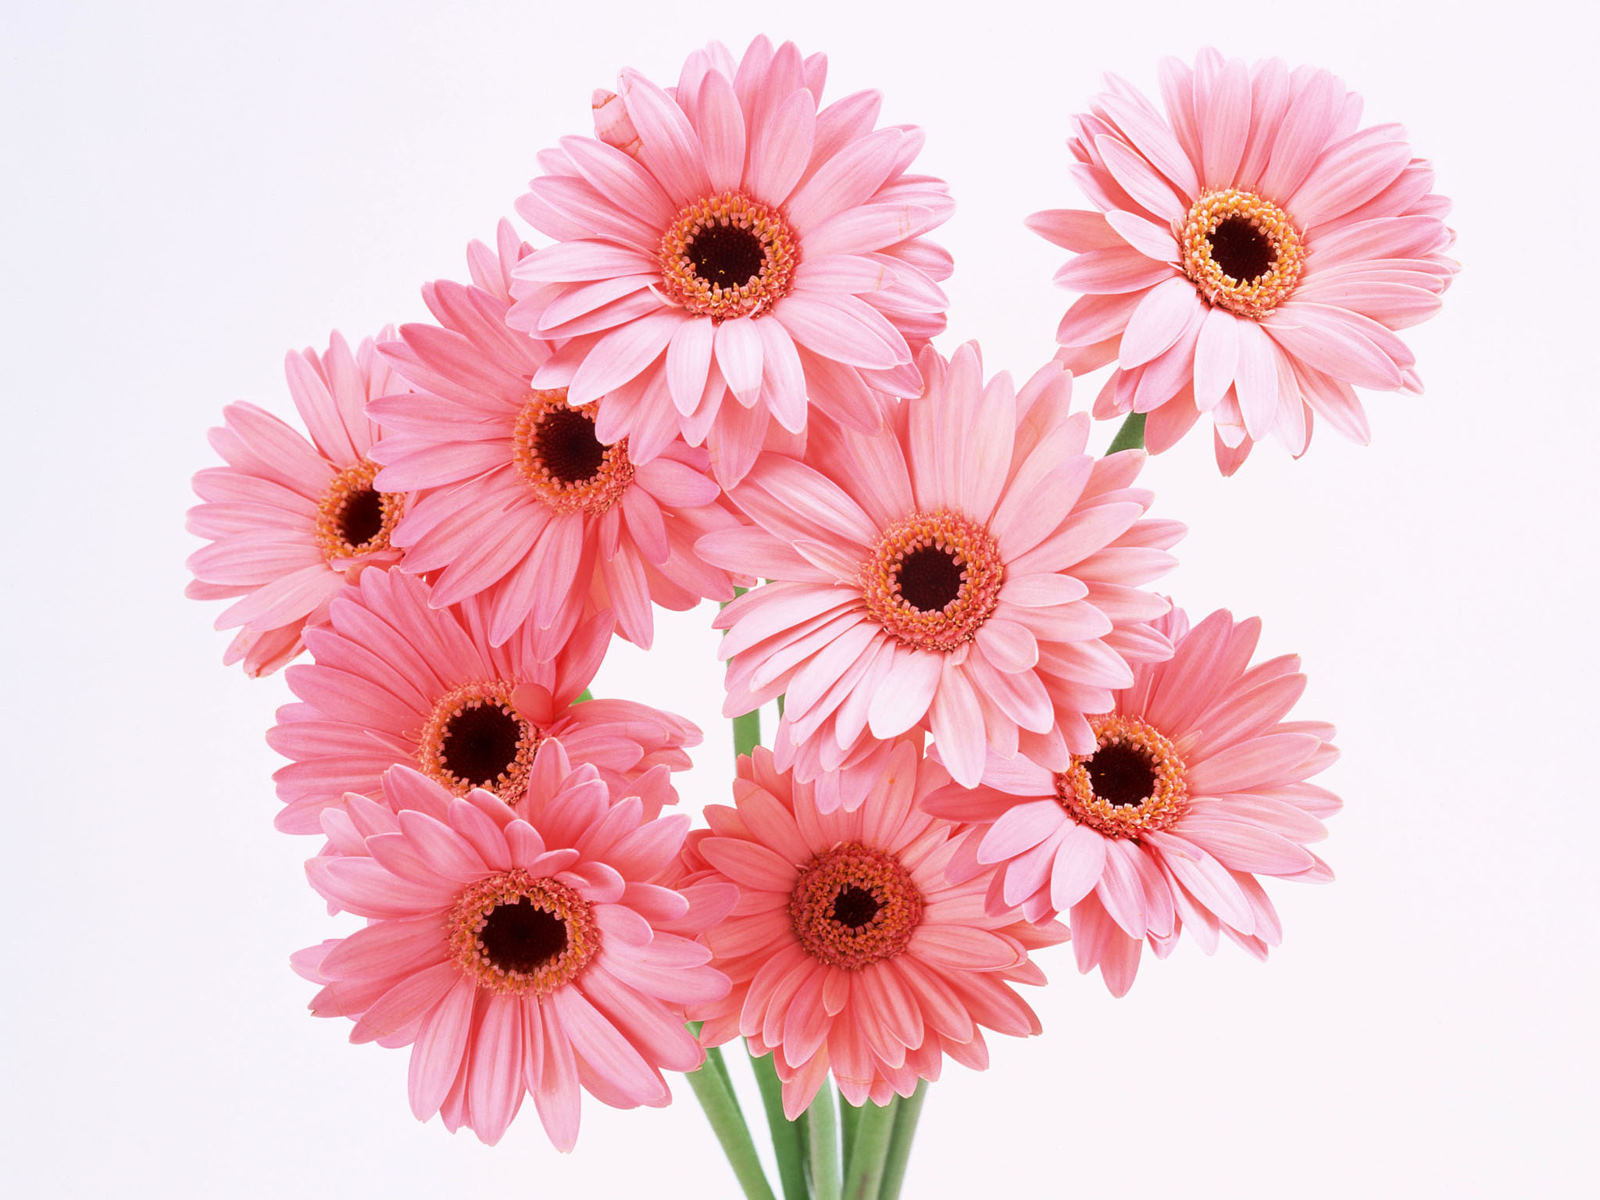 flowers for flower lovers.: Flowers wallpapers HD desktop Beautiful ...